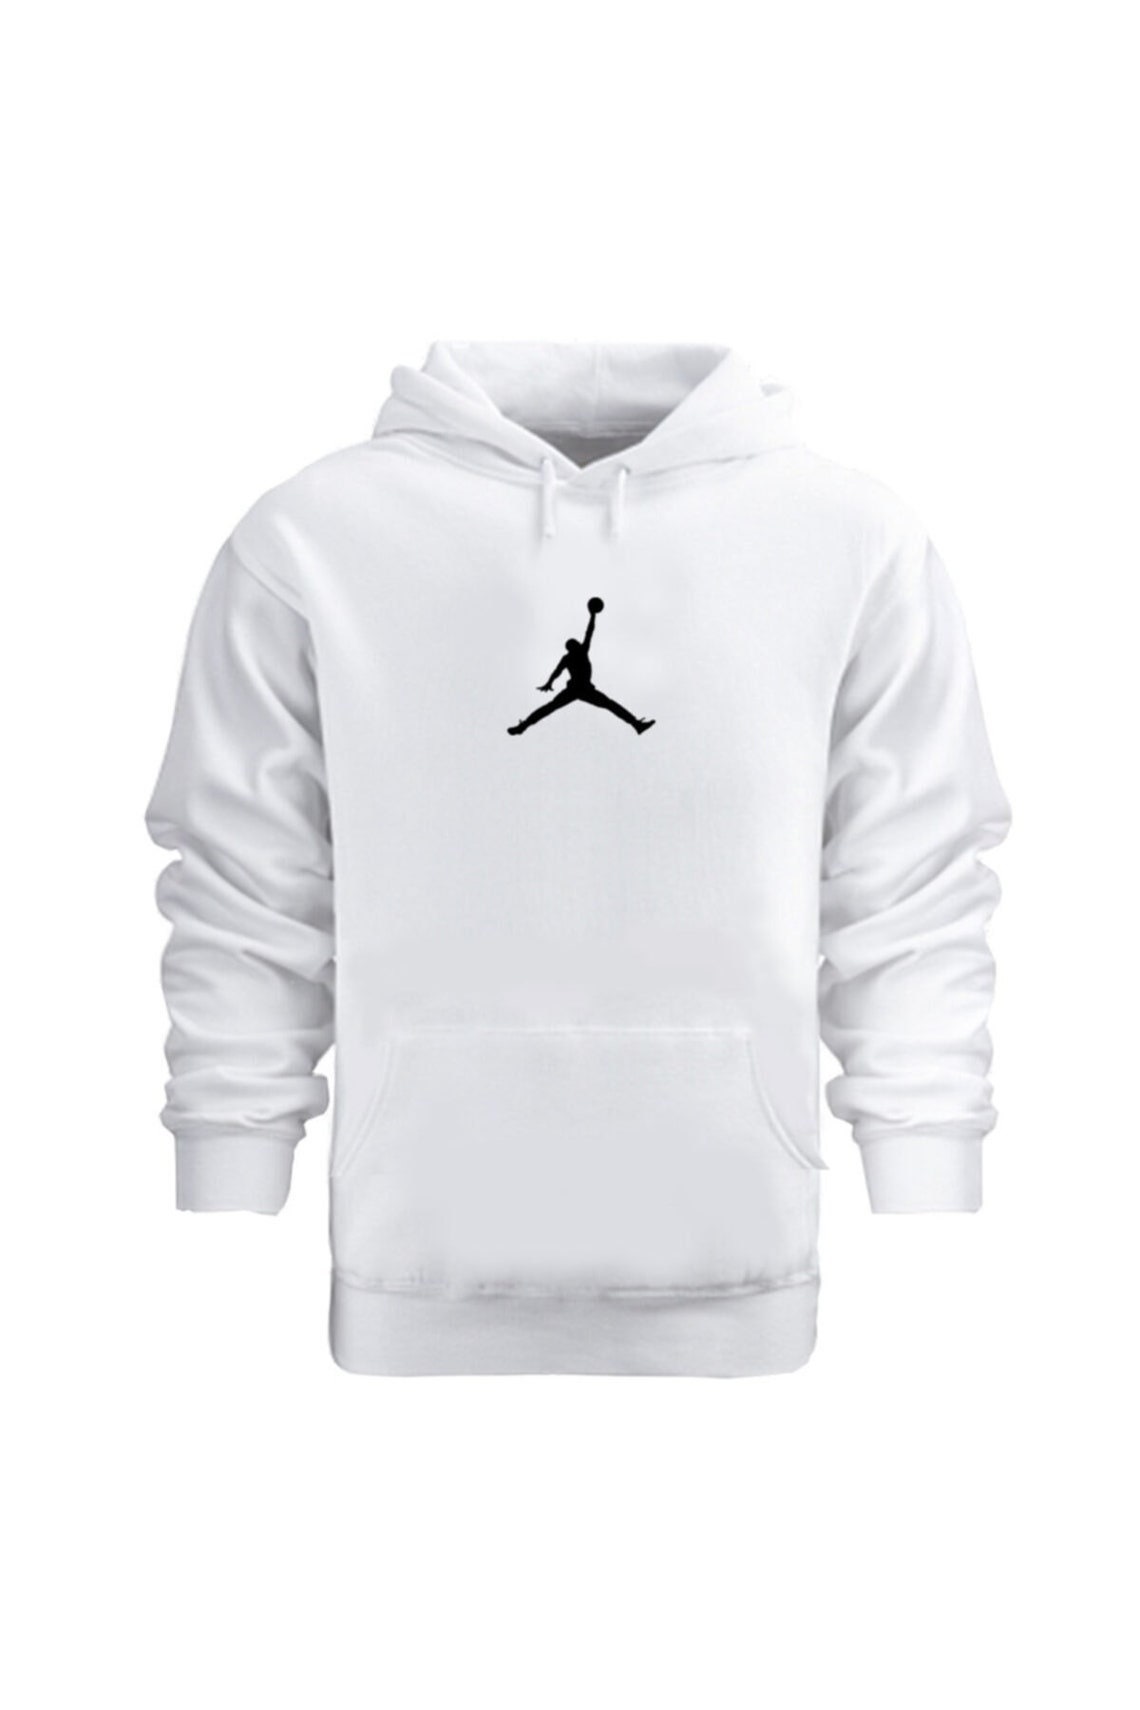 all white jordan hoodie